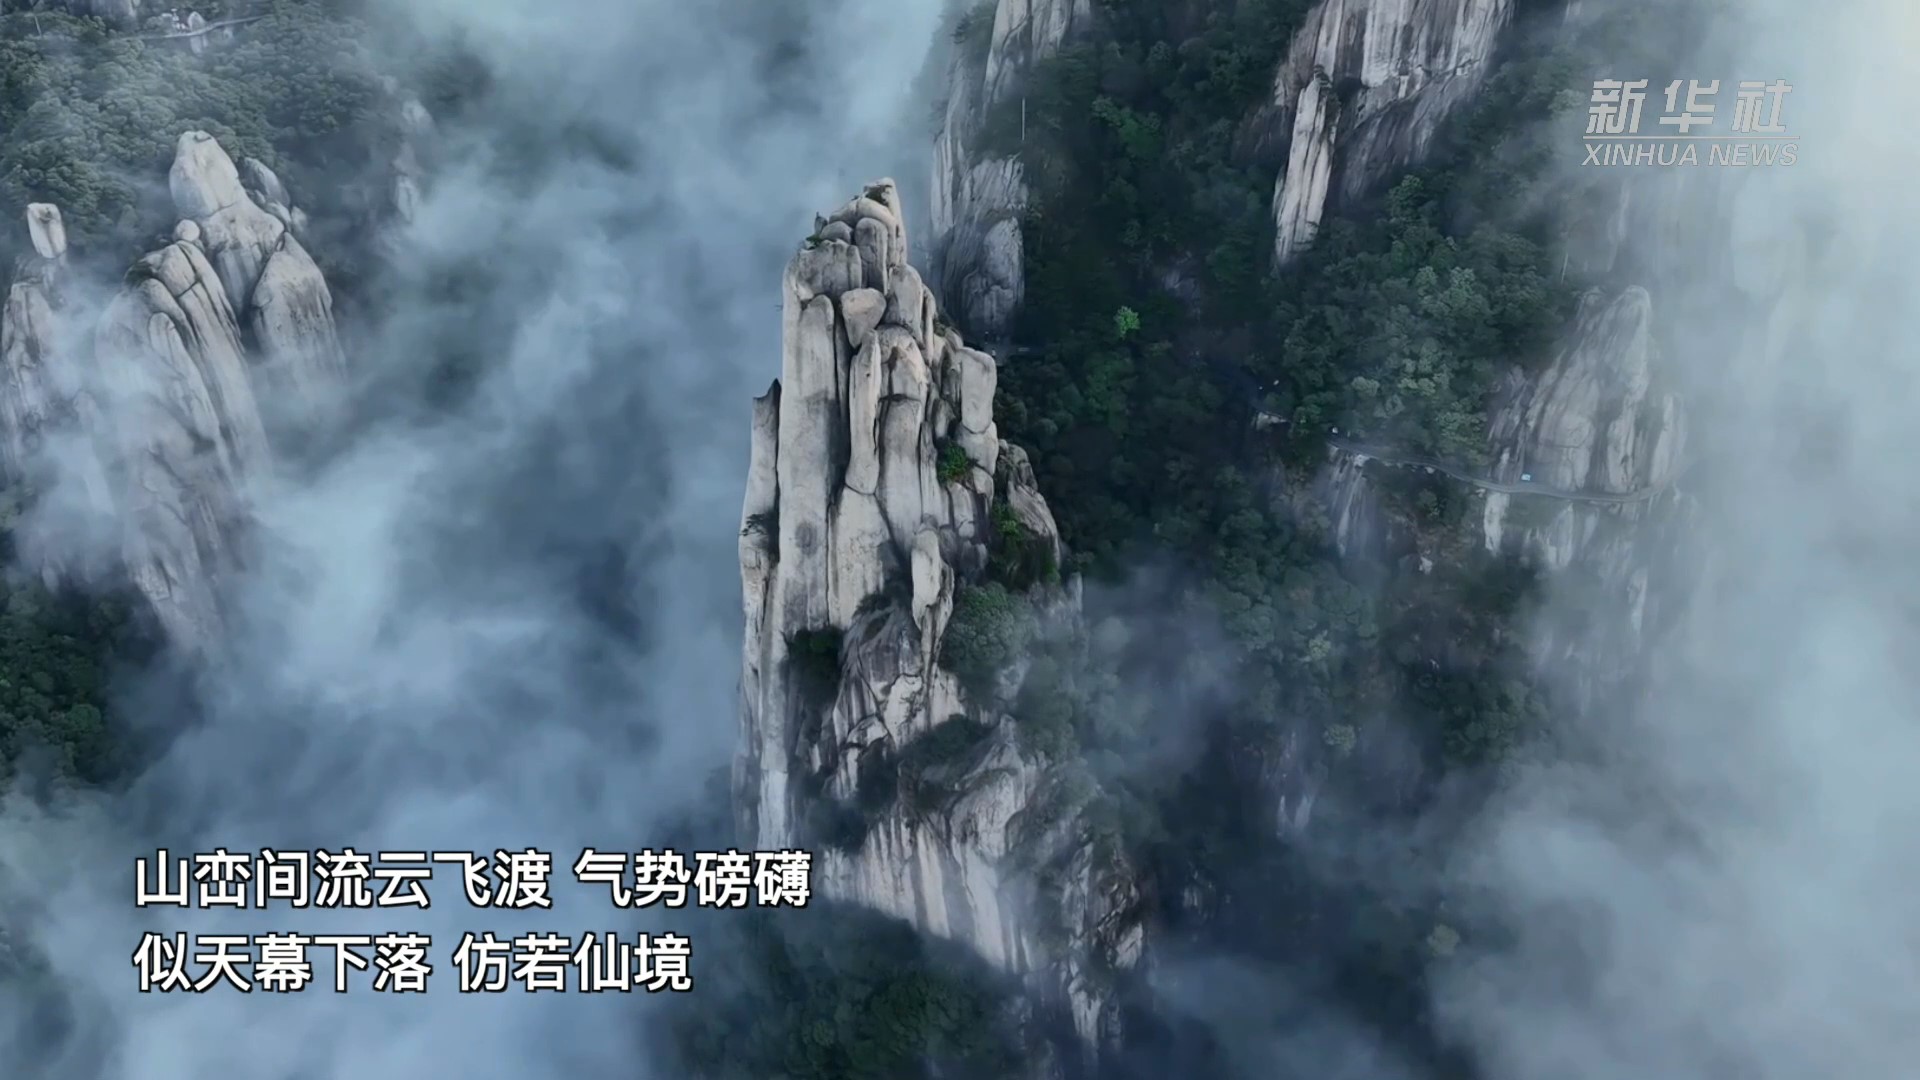 มวลเมฆลอยคลุ้งคลุม 'เทือกเขาจิ่วหัว' ในอันฮุย